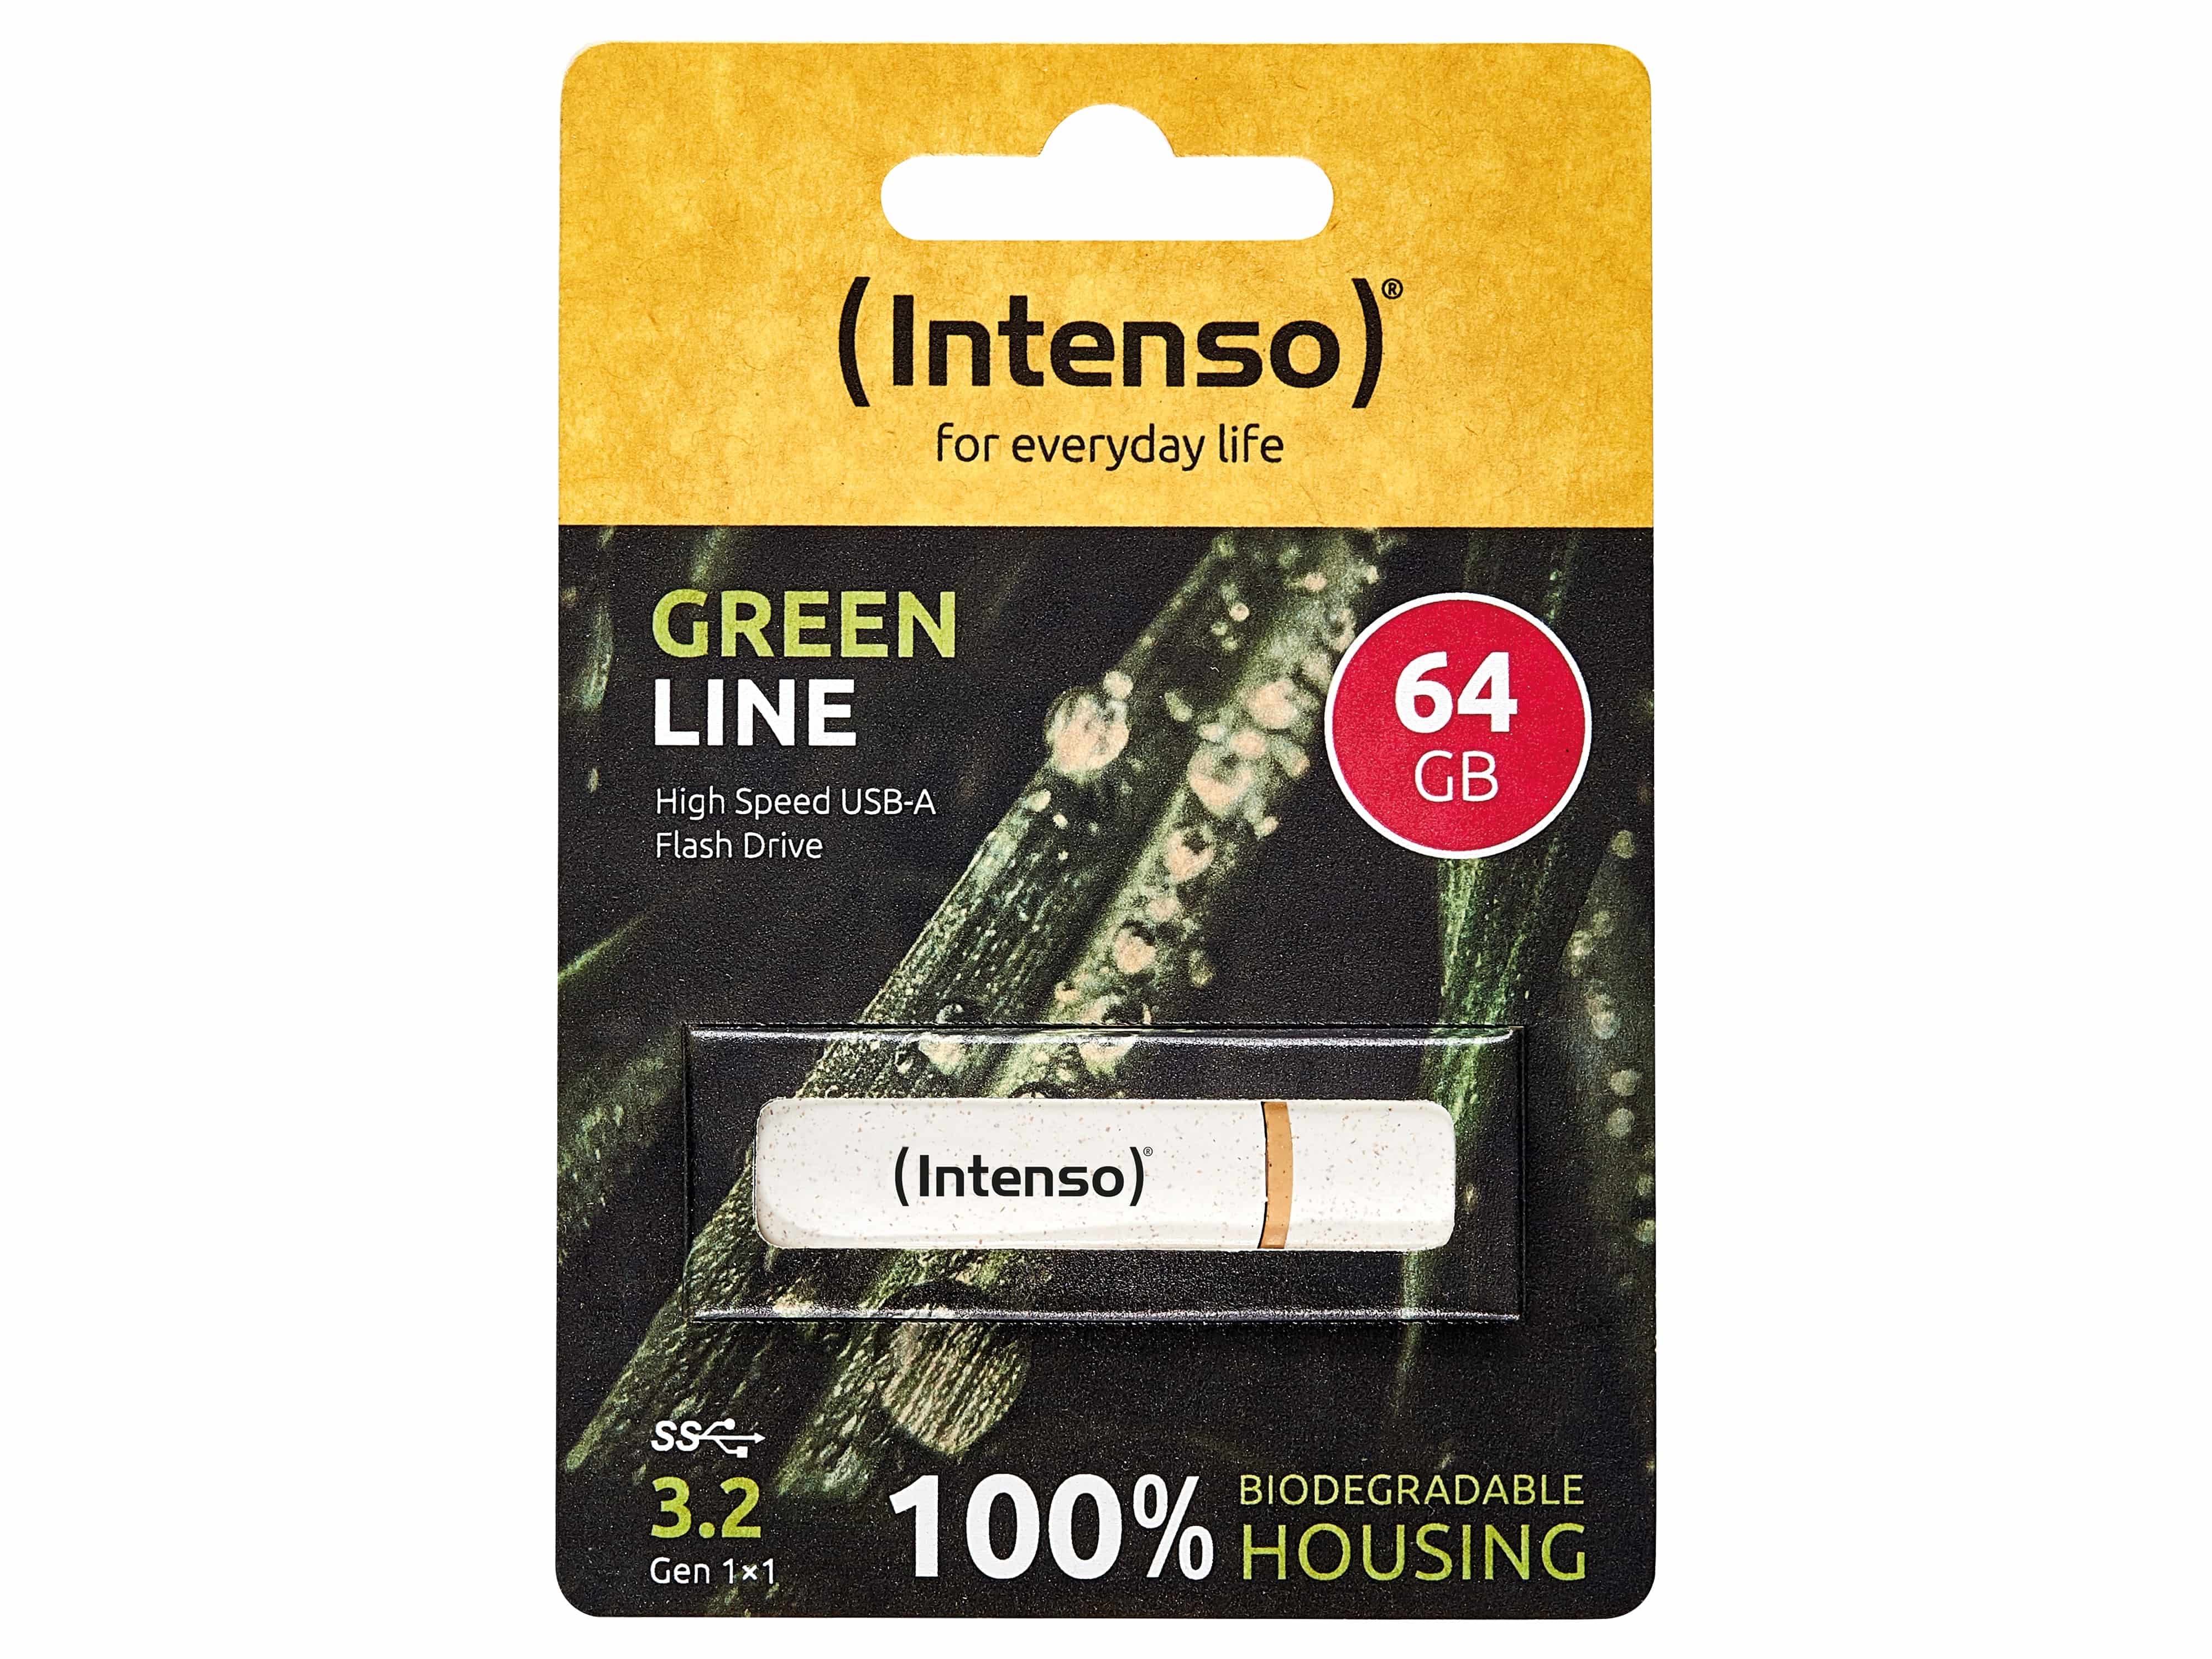 INTENSO USB 3.2-Stick INTENSO Green Line, 64 GB, beige/braun